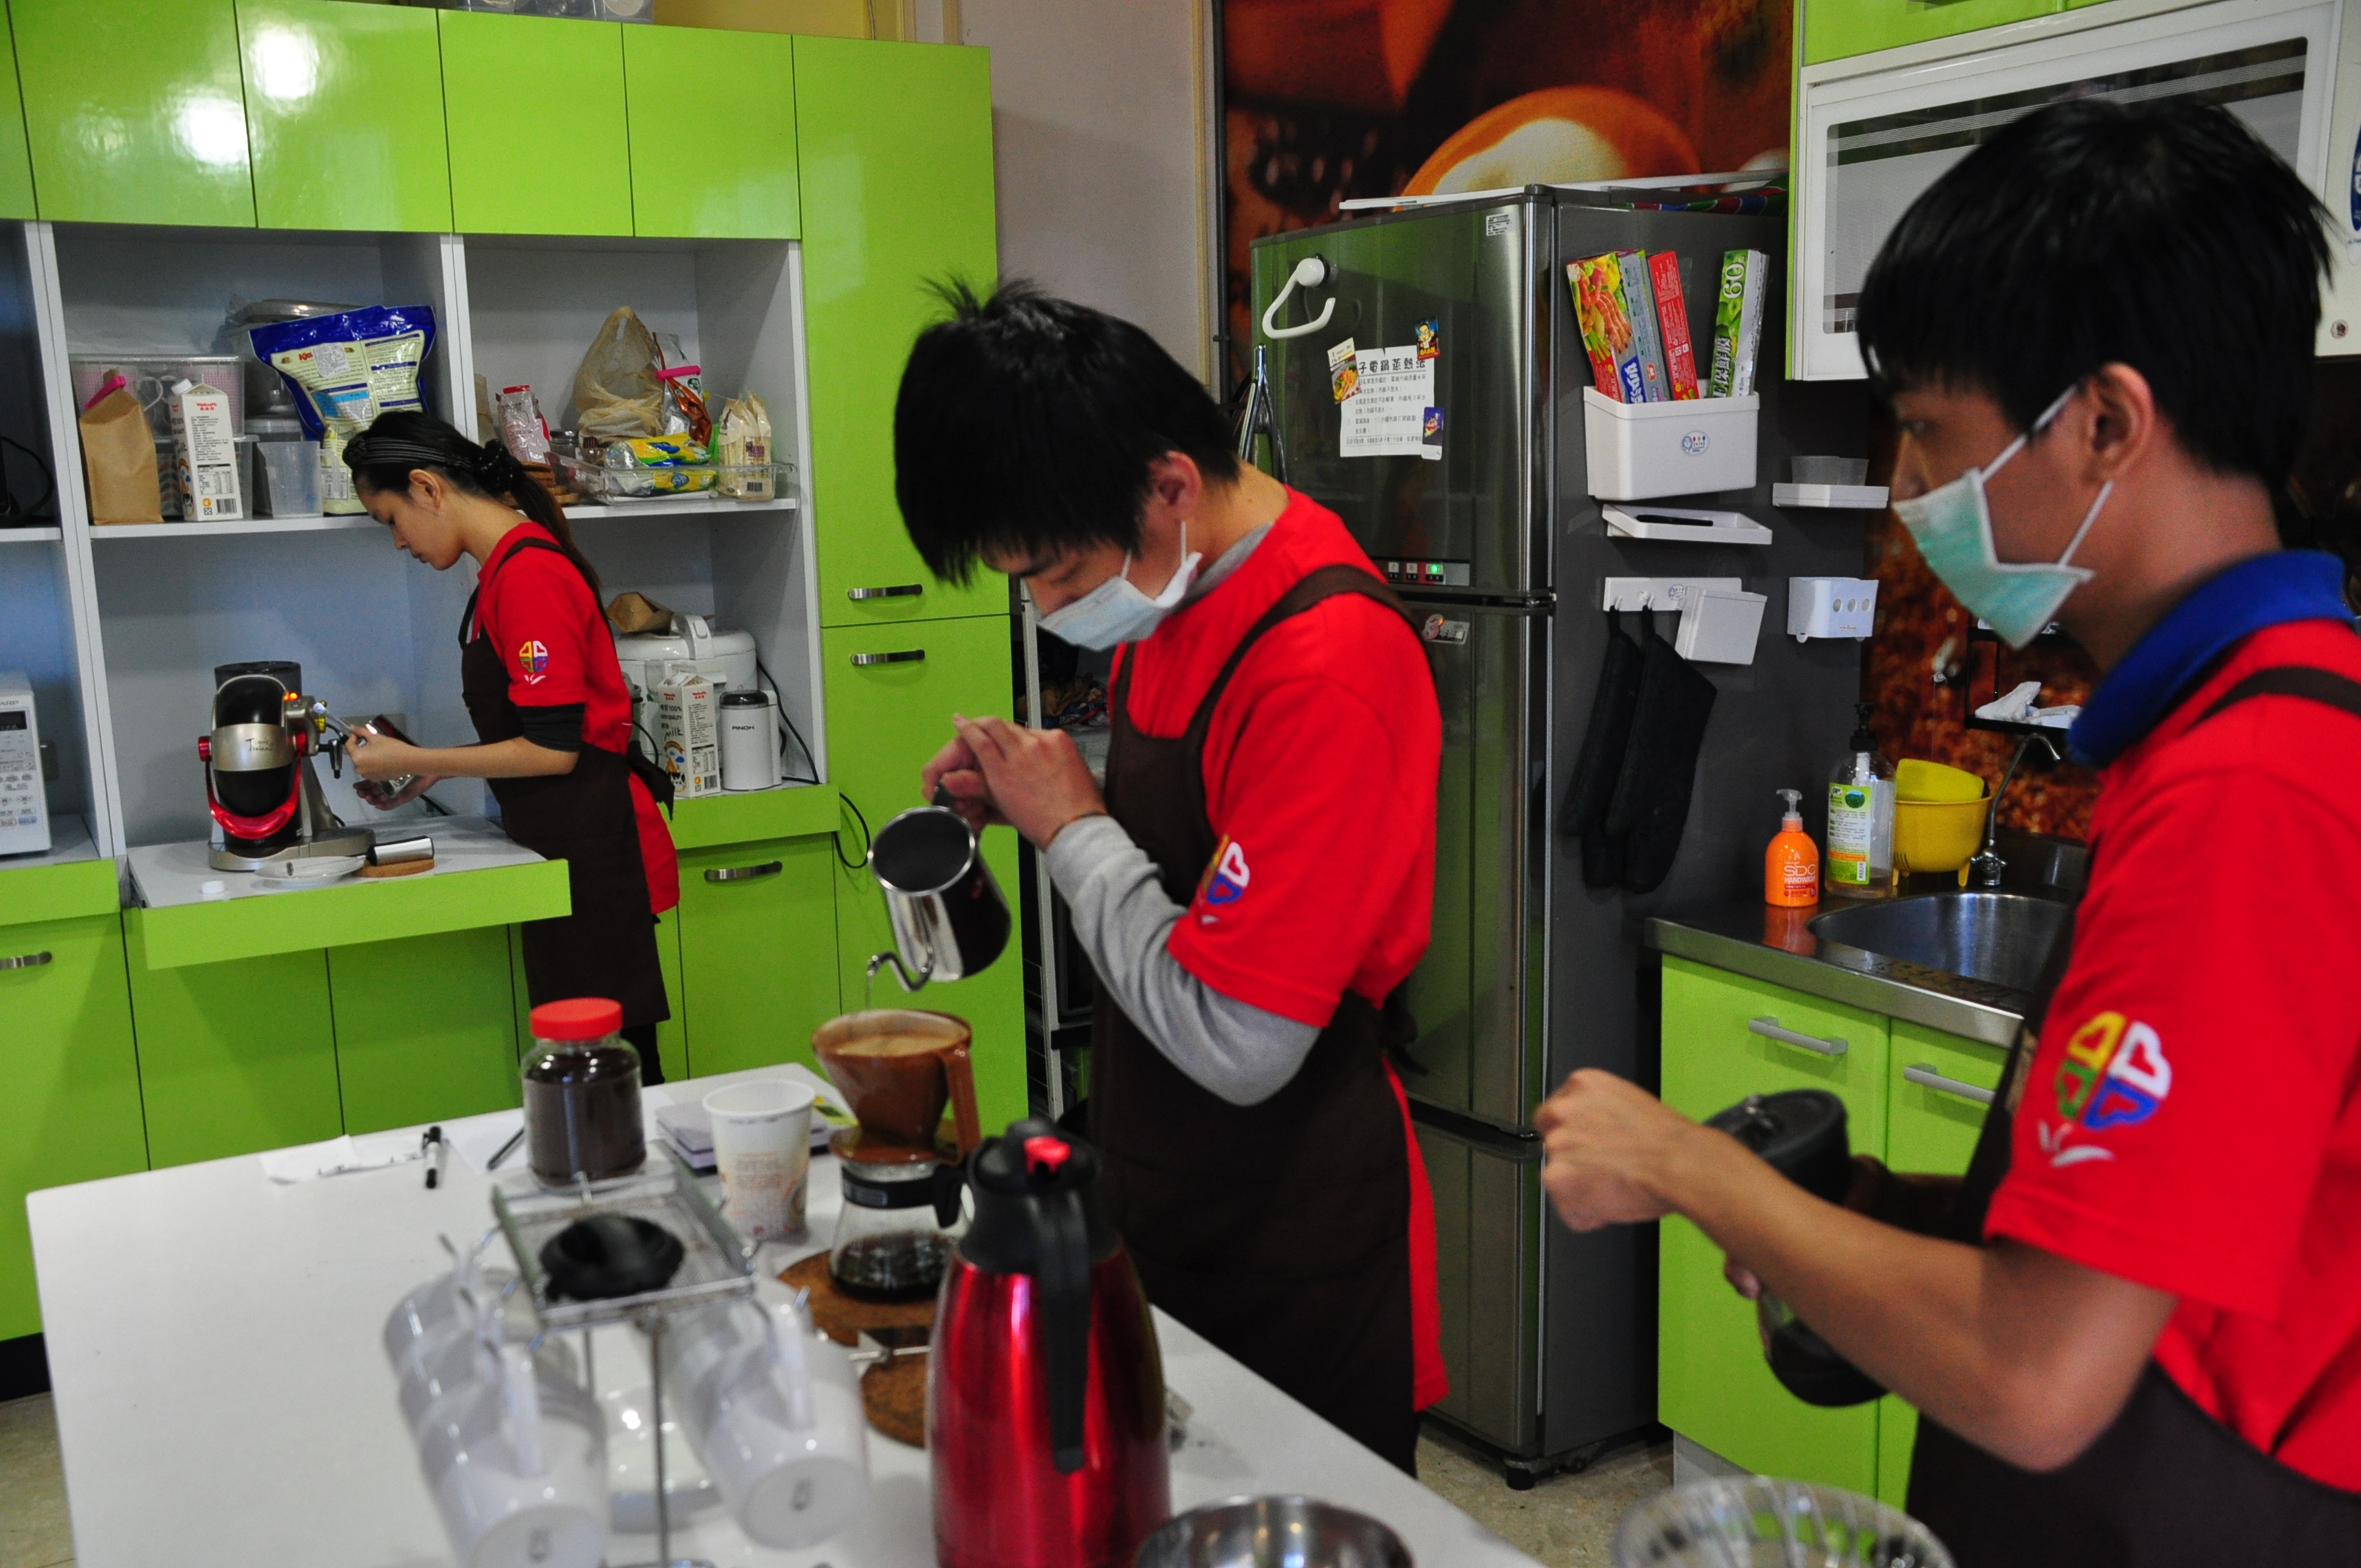   小欣國三翹家當小媽媽  在社工輔導下學賣咖啡 

「噓~秘密」蘆洲少年中心展出少年成長故事

